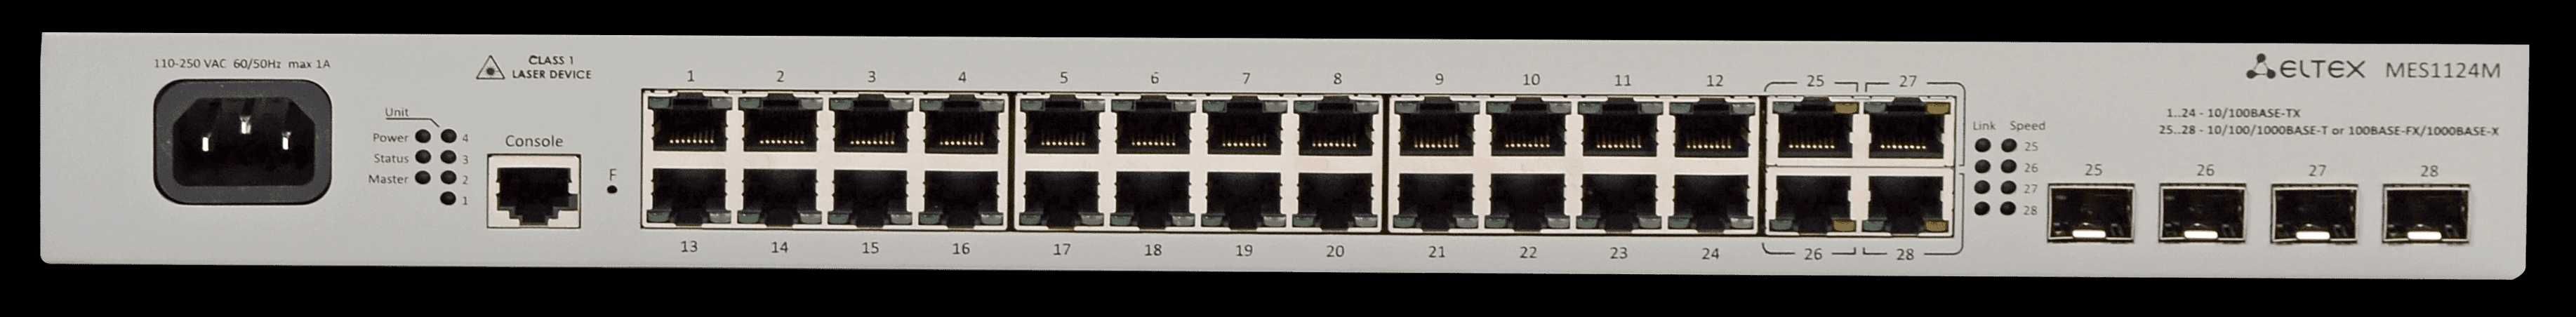 Eltex Ethernet-коммутатор, модель: MES1124M AC